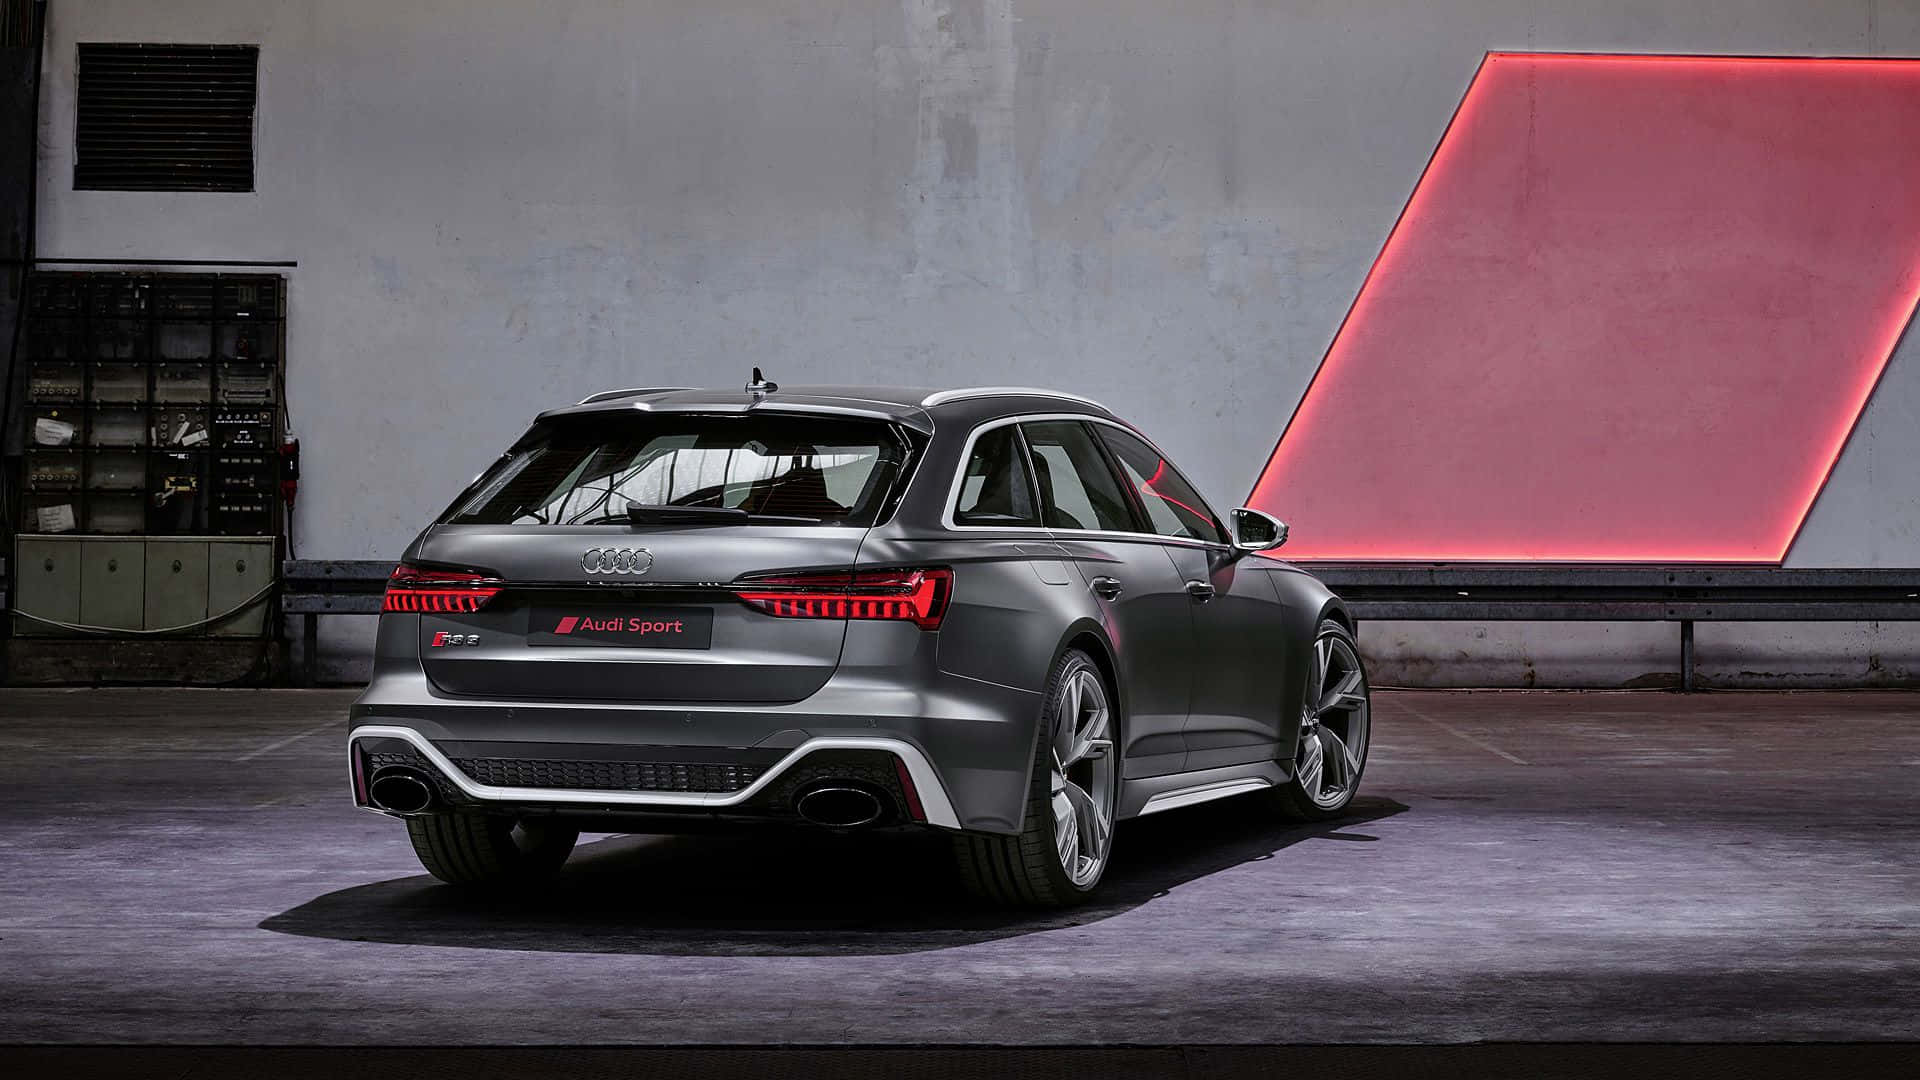 Audi Rs6 Wallpaper